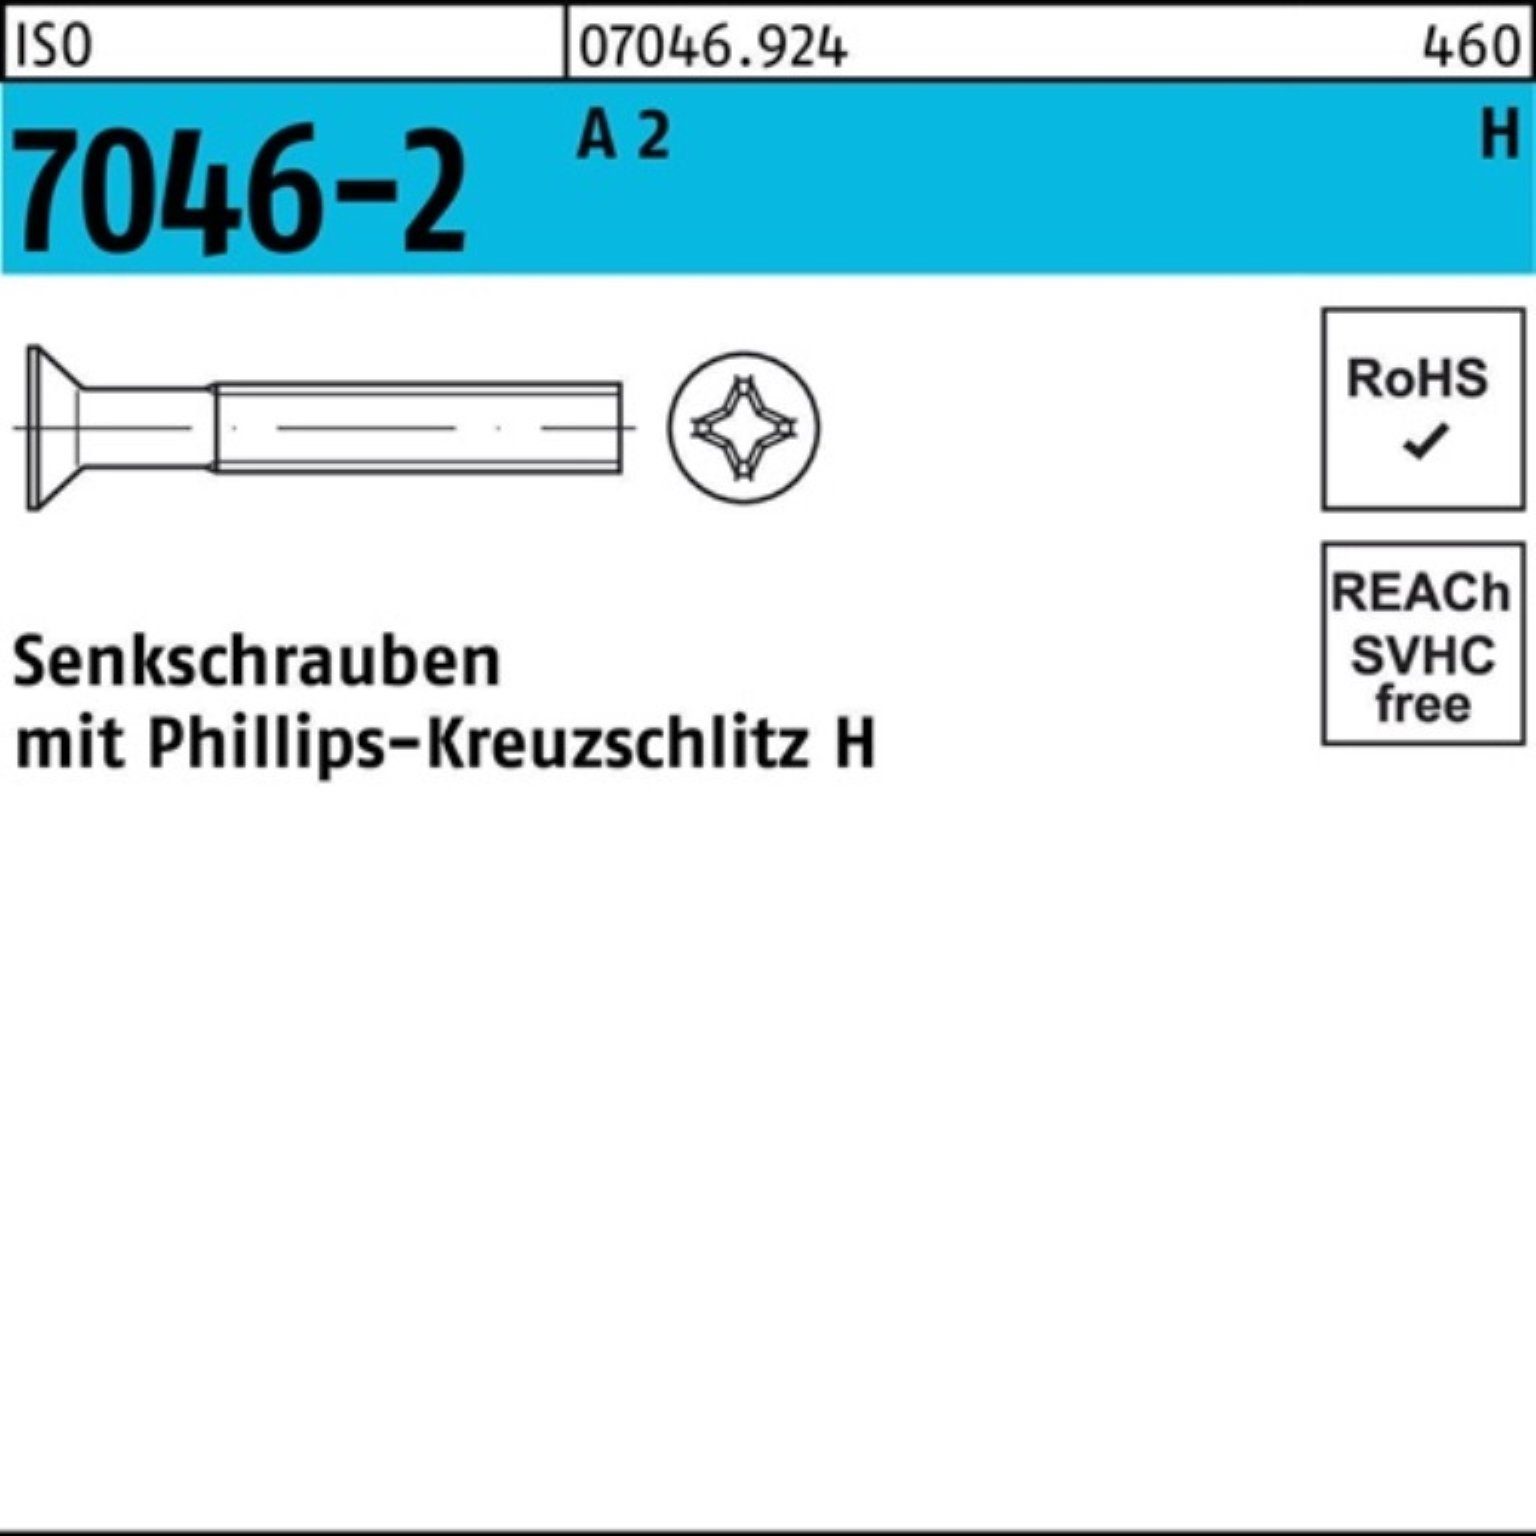 100er ISO ISO 60-H Senkschraube Senkschraube PH 2 Pack 7046-2 100 Stück Reyher 704 M10x A